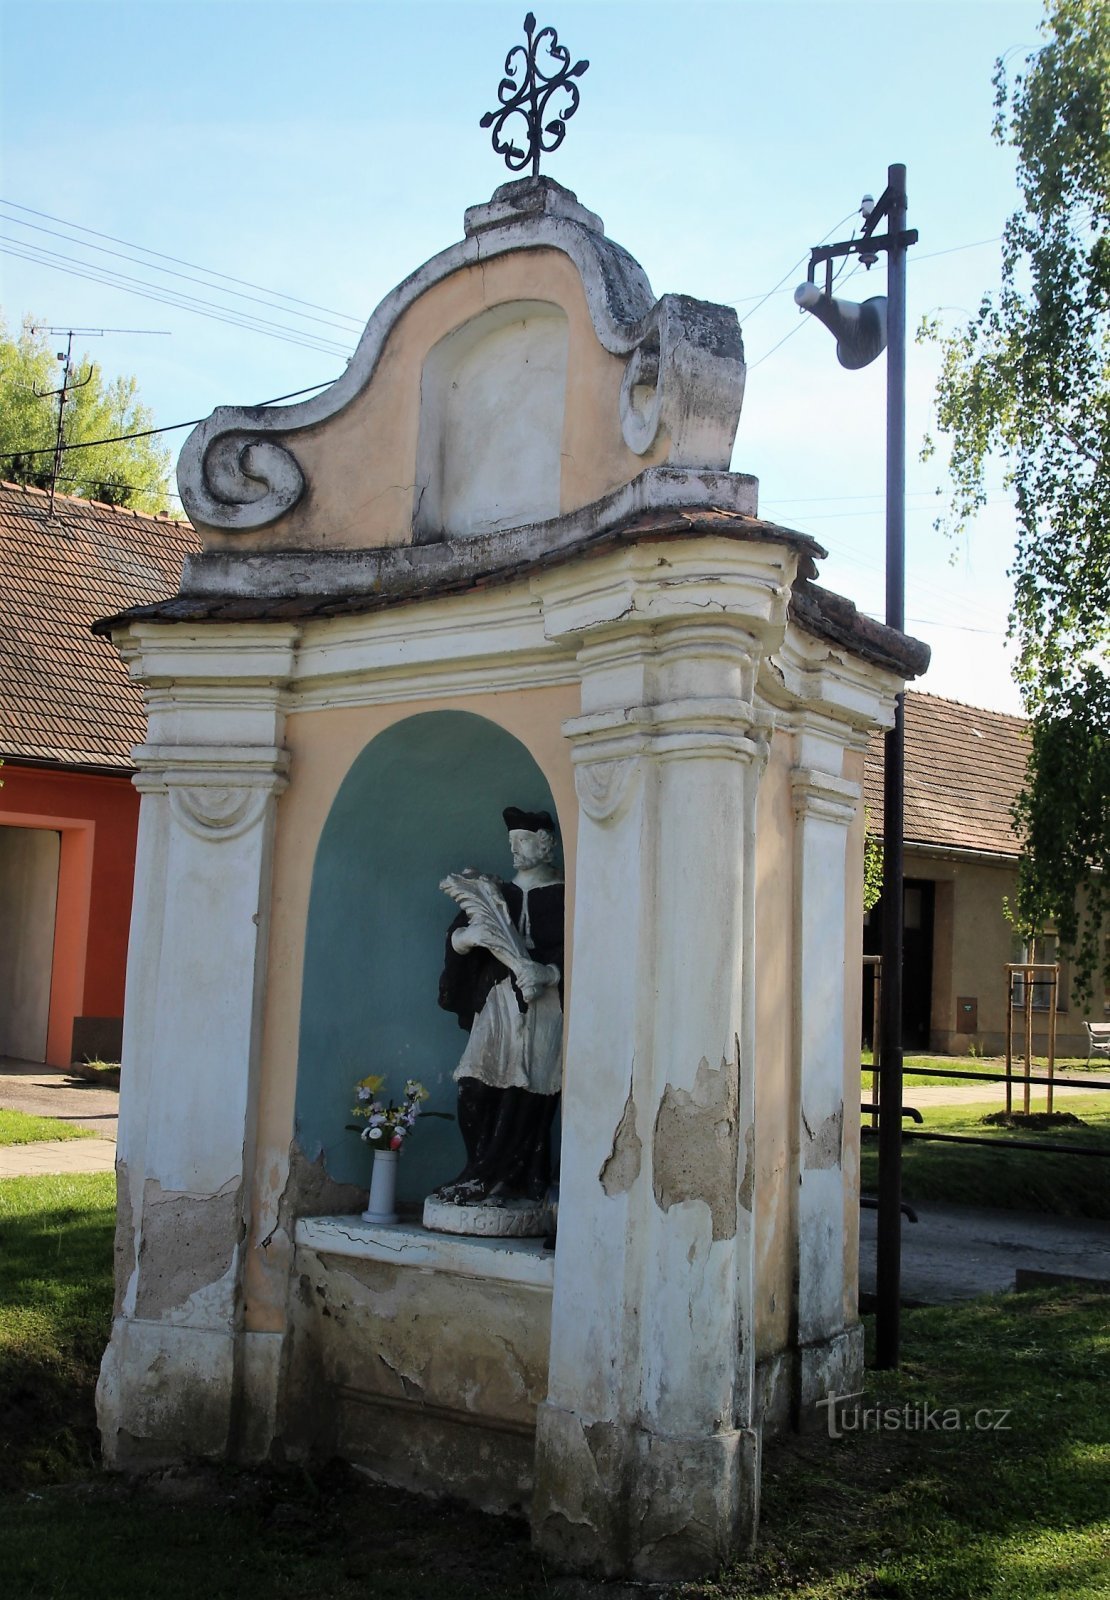 Capelă de nișă în stil baroc cu o statuie a Sf. Jan Nepomucký.